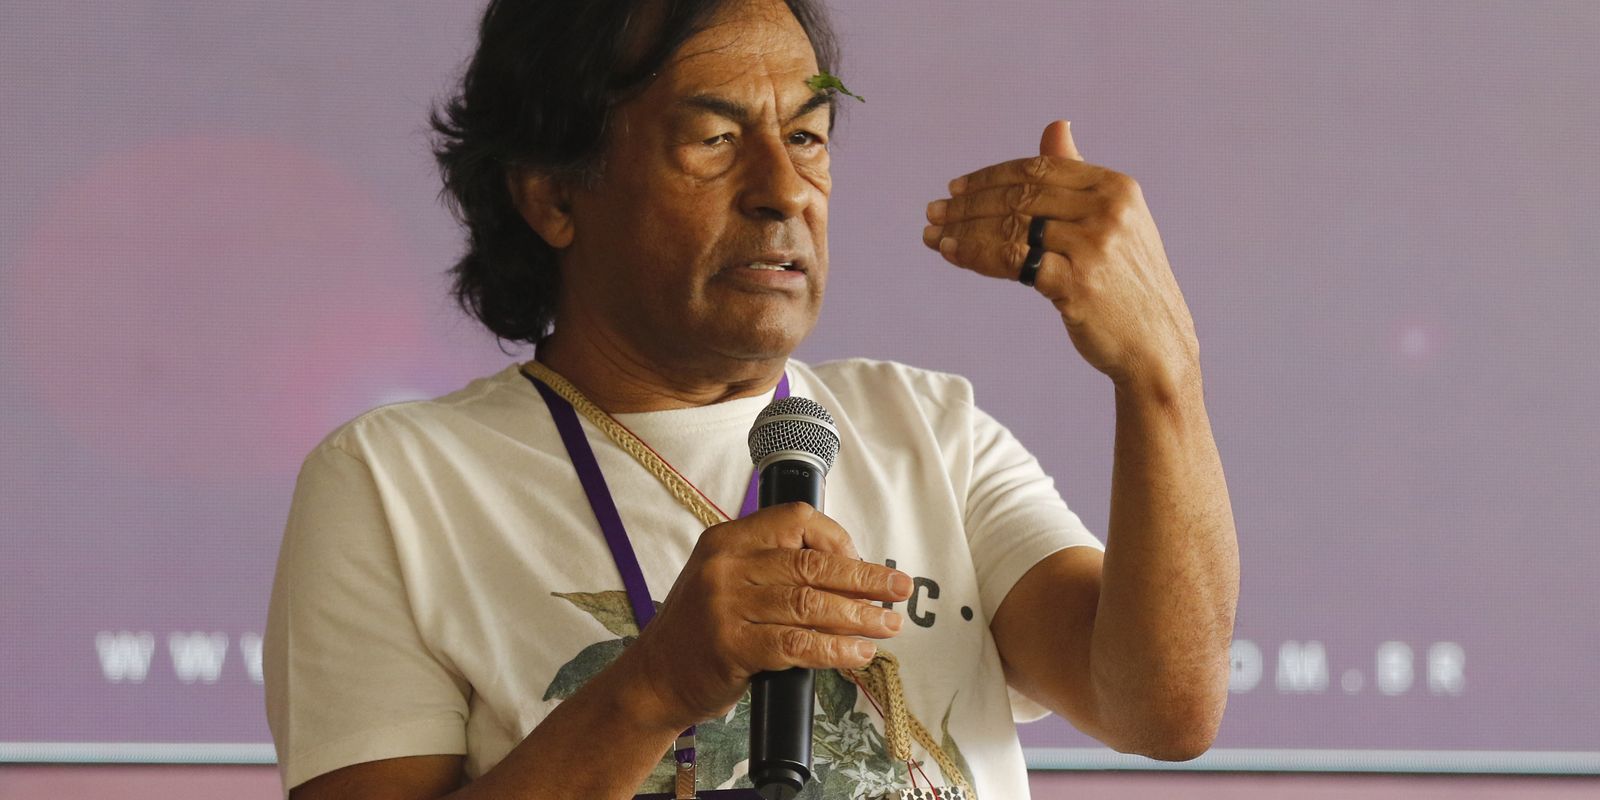 Artigo: Uma só voz: ABL e povos indígenas